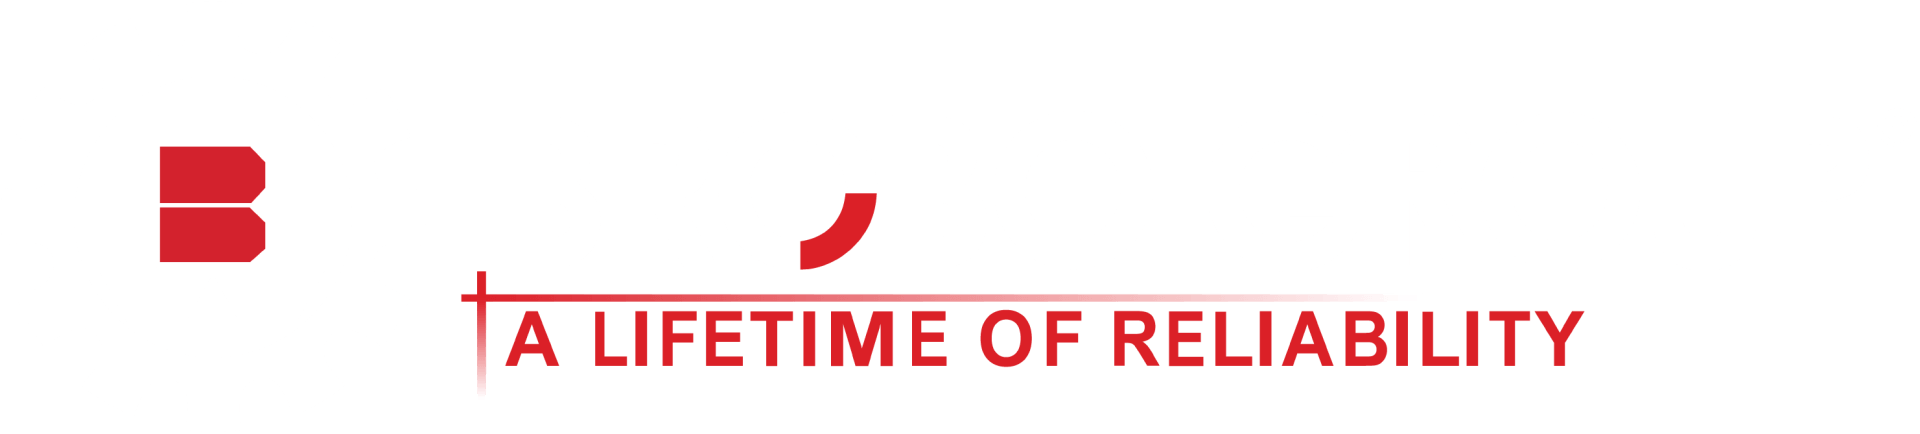 Brobo Cold Saws - A Lifetime Of Reliability